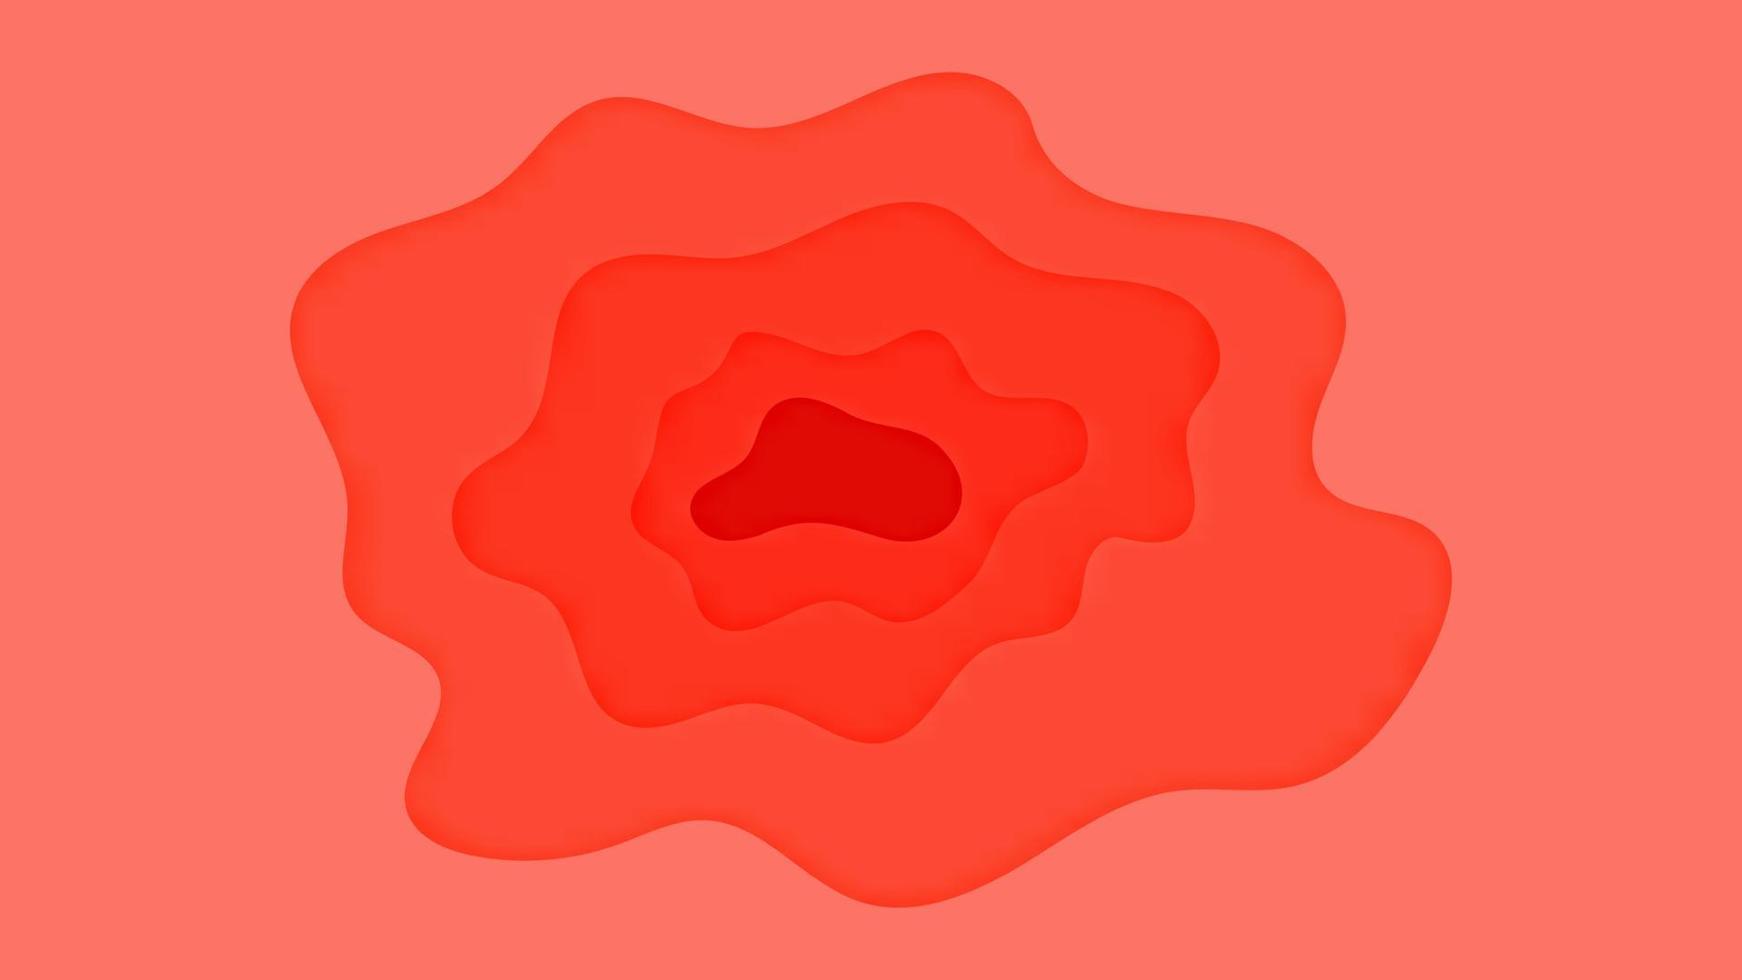 sfondo rosso papercut astratto con modello di testo sfondi in stile carta tagliata. può essere utilizzato per poster, banner aziendali, volantini, pubblicità, brochure, cataloghi, siti web, siti web, presentazioni vettore